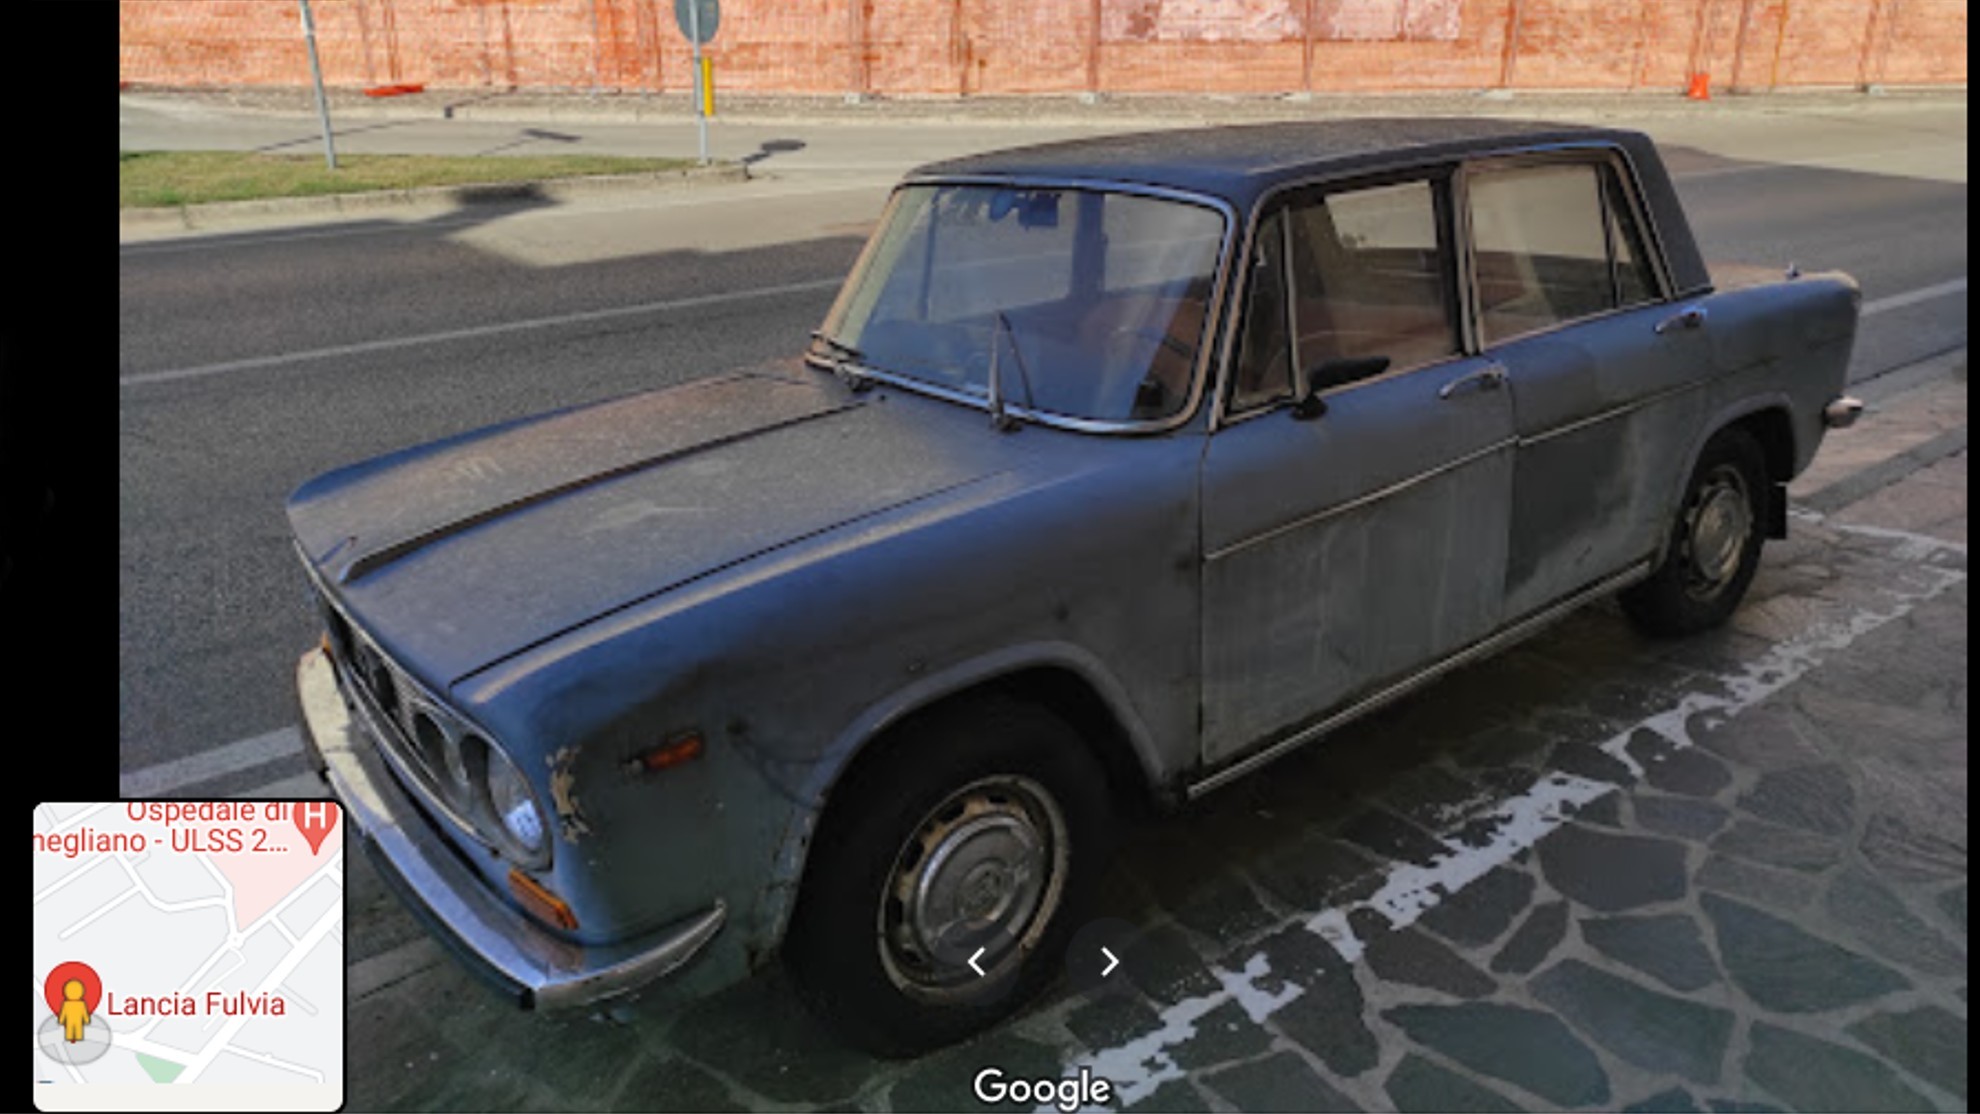 Lancia Fulvia - Conegliano - Google Maps - 47 años en el mismo sitio - Angelo Fregolent - restaurado